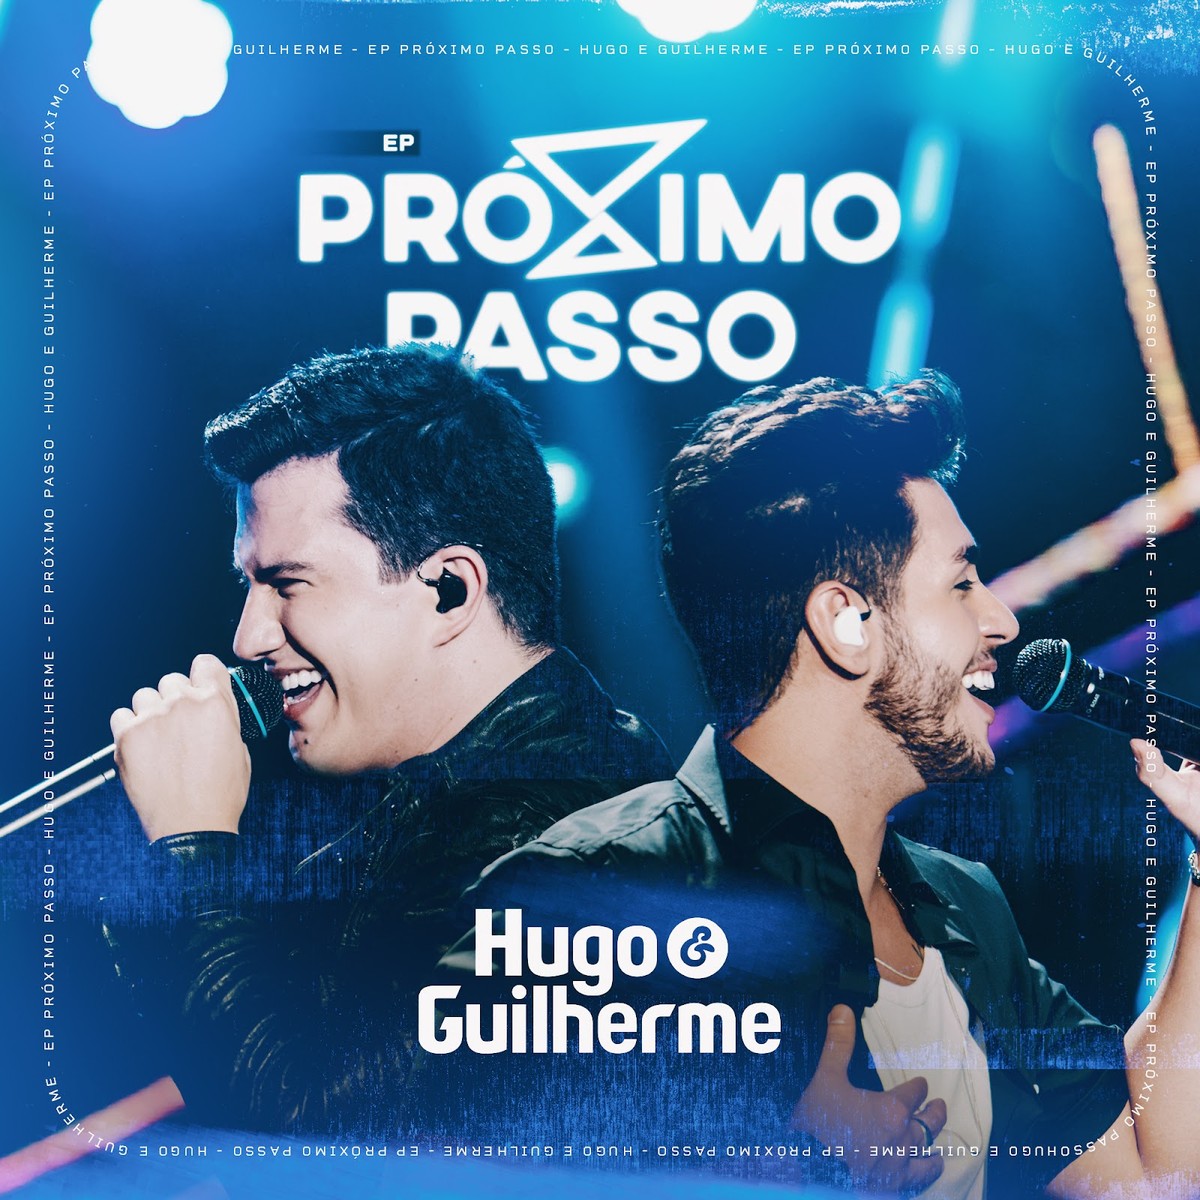 Hugo & Guilherme apostam em ‘Felicidade dela’ para divulgar EP do álbum ‘Próximo passo’ |  Weblog do Mauro Ferreira